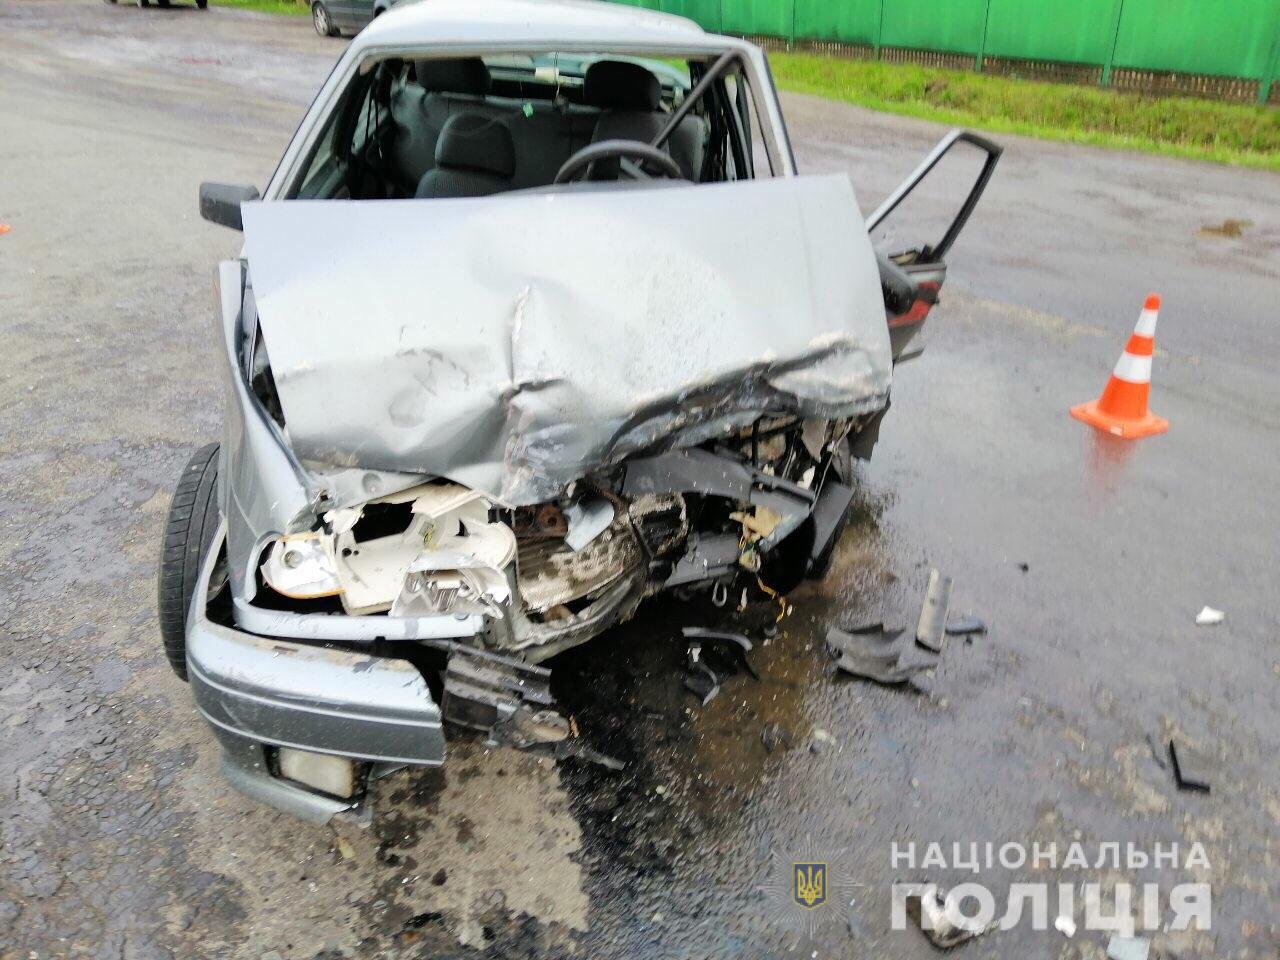 Поліцейські надали нові подробиці резонансної автопригоди на Мукачівщині (ФОТО)